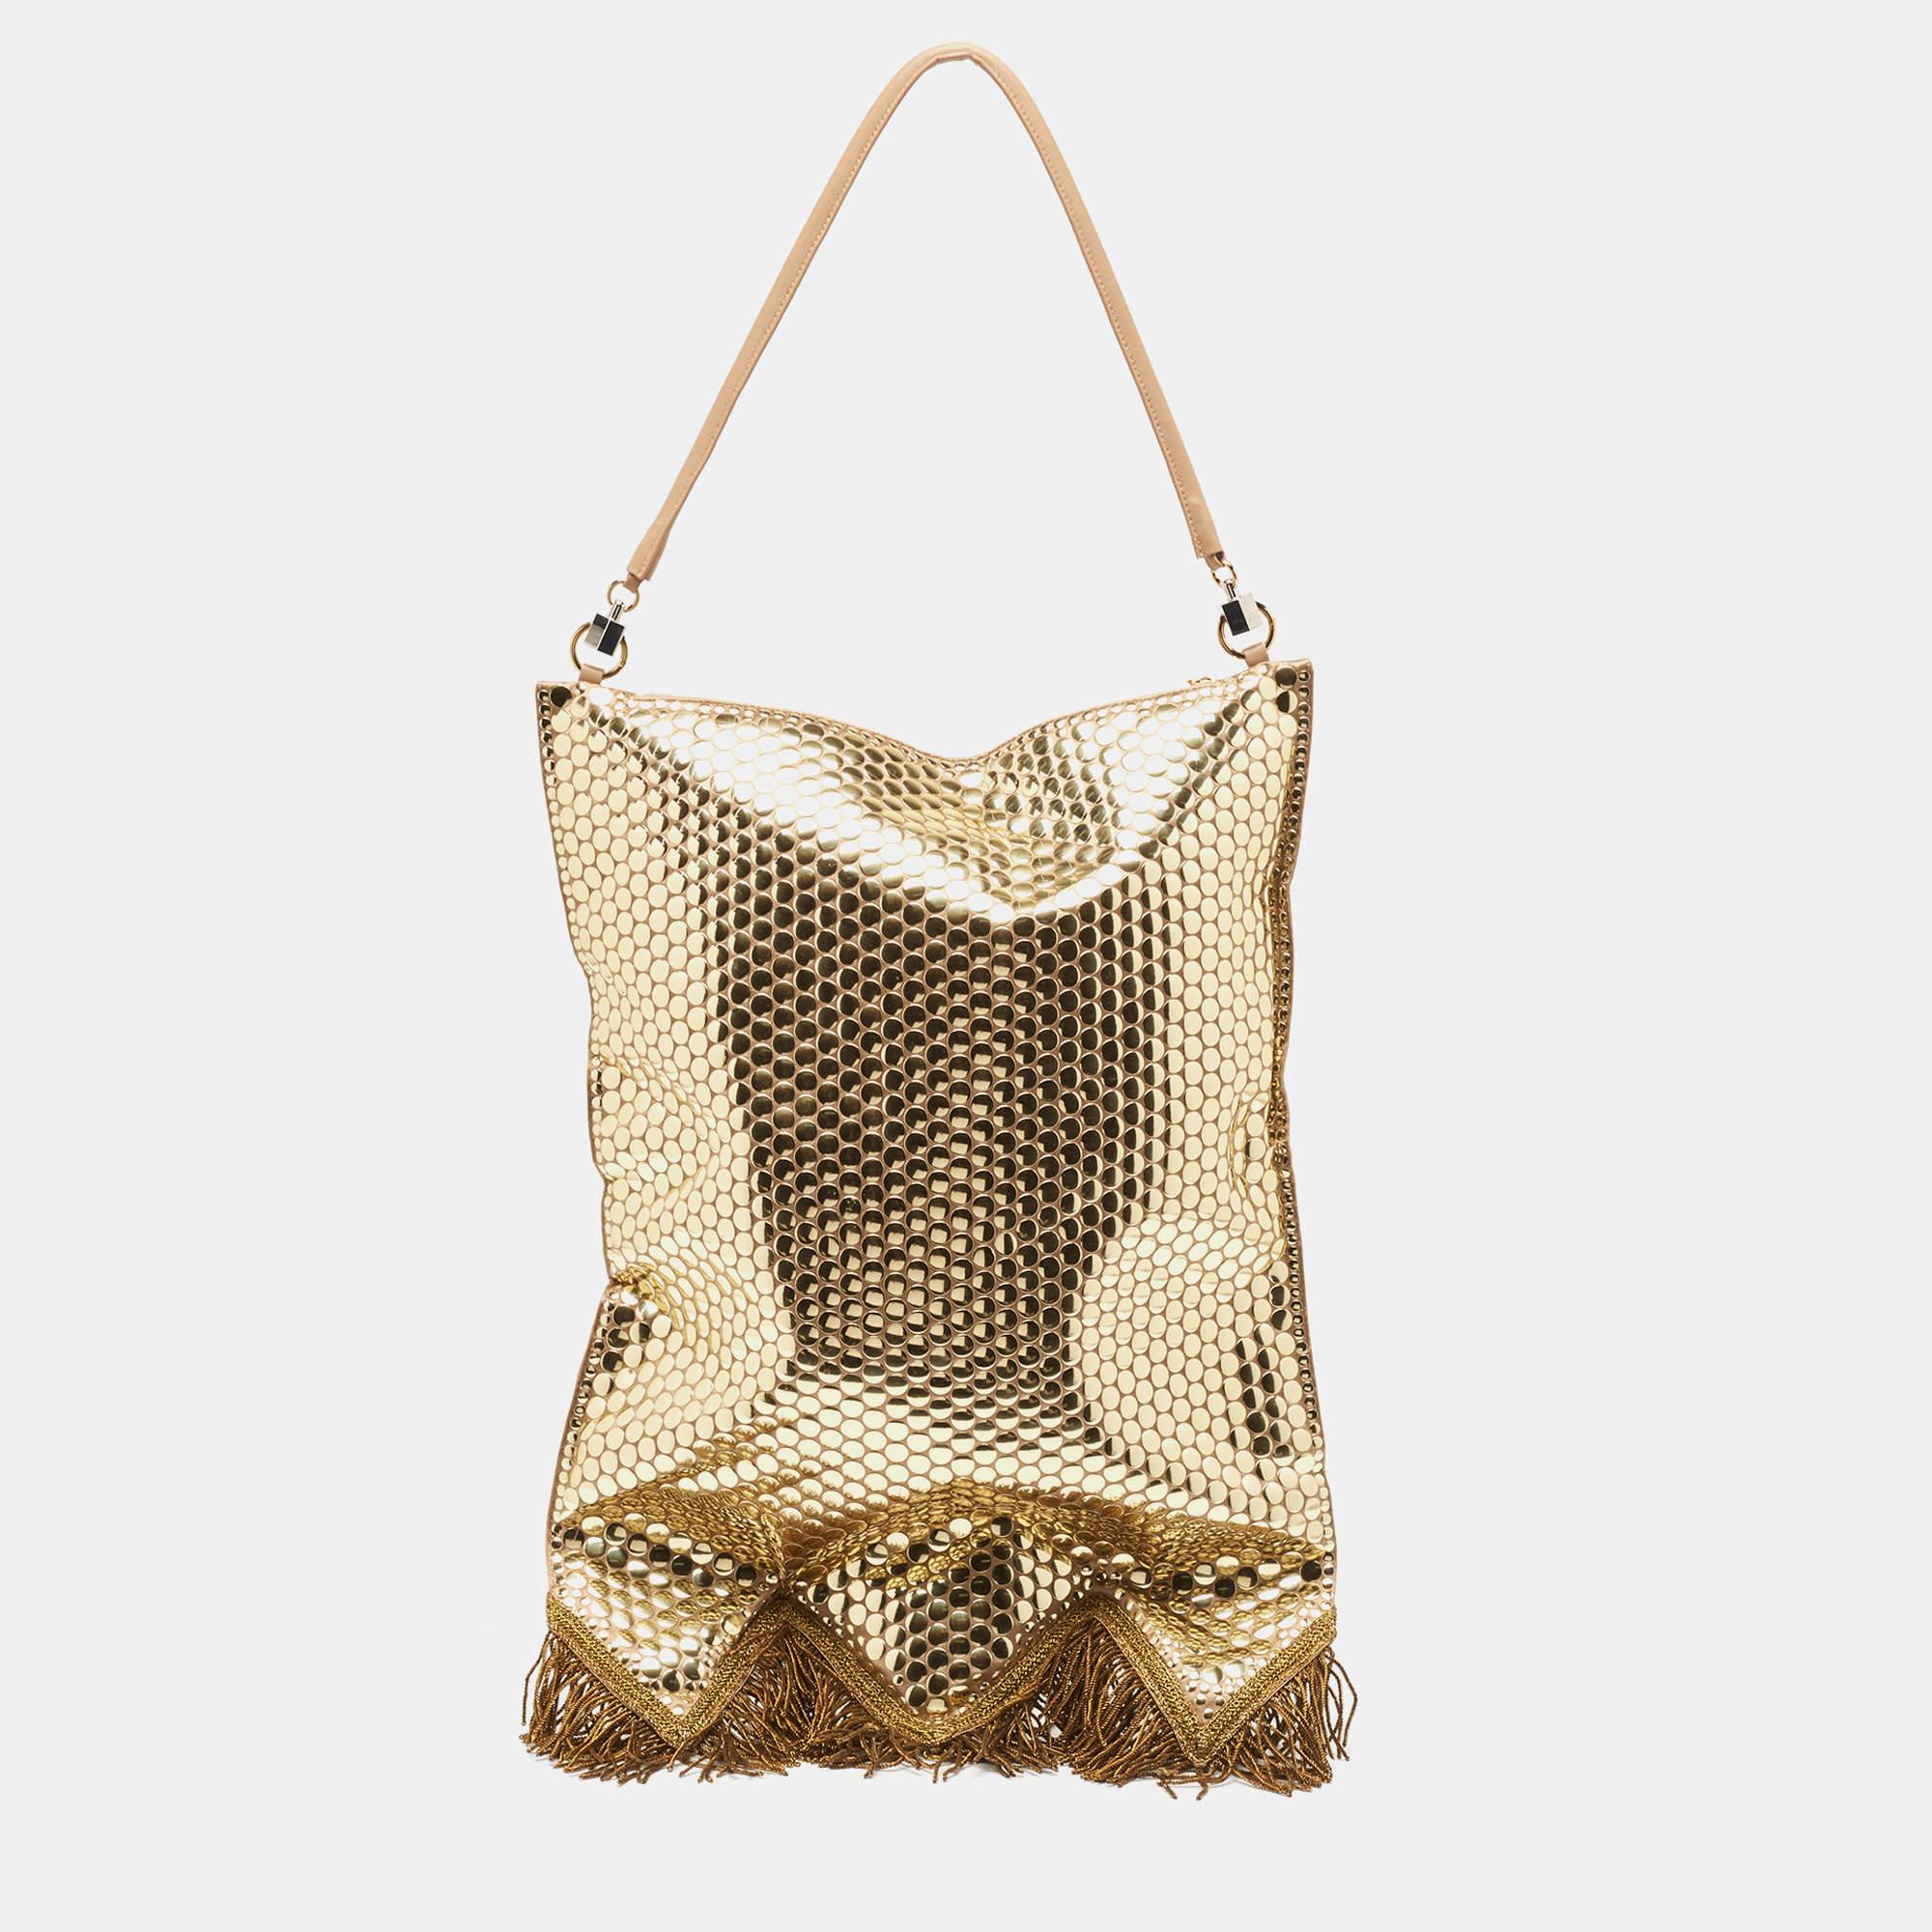 Die Burberry-Tasche ist ein luxuriöses Modeaccessoire. Das Modell besteht aus Satin und ist mit filigranen Fransen aus Goldbarren und schimmernden Paillettenverzierungen geschmückt. Dieses Statement-Stück strahlt Eleganz und britisches Erbe